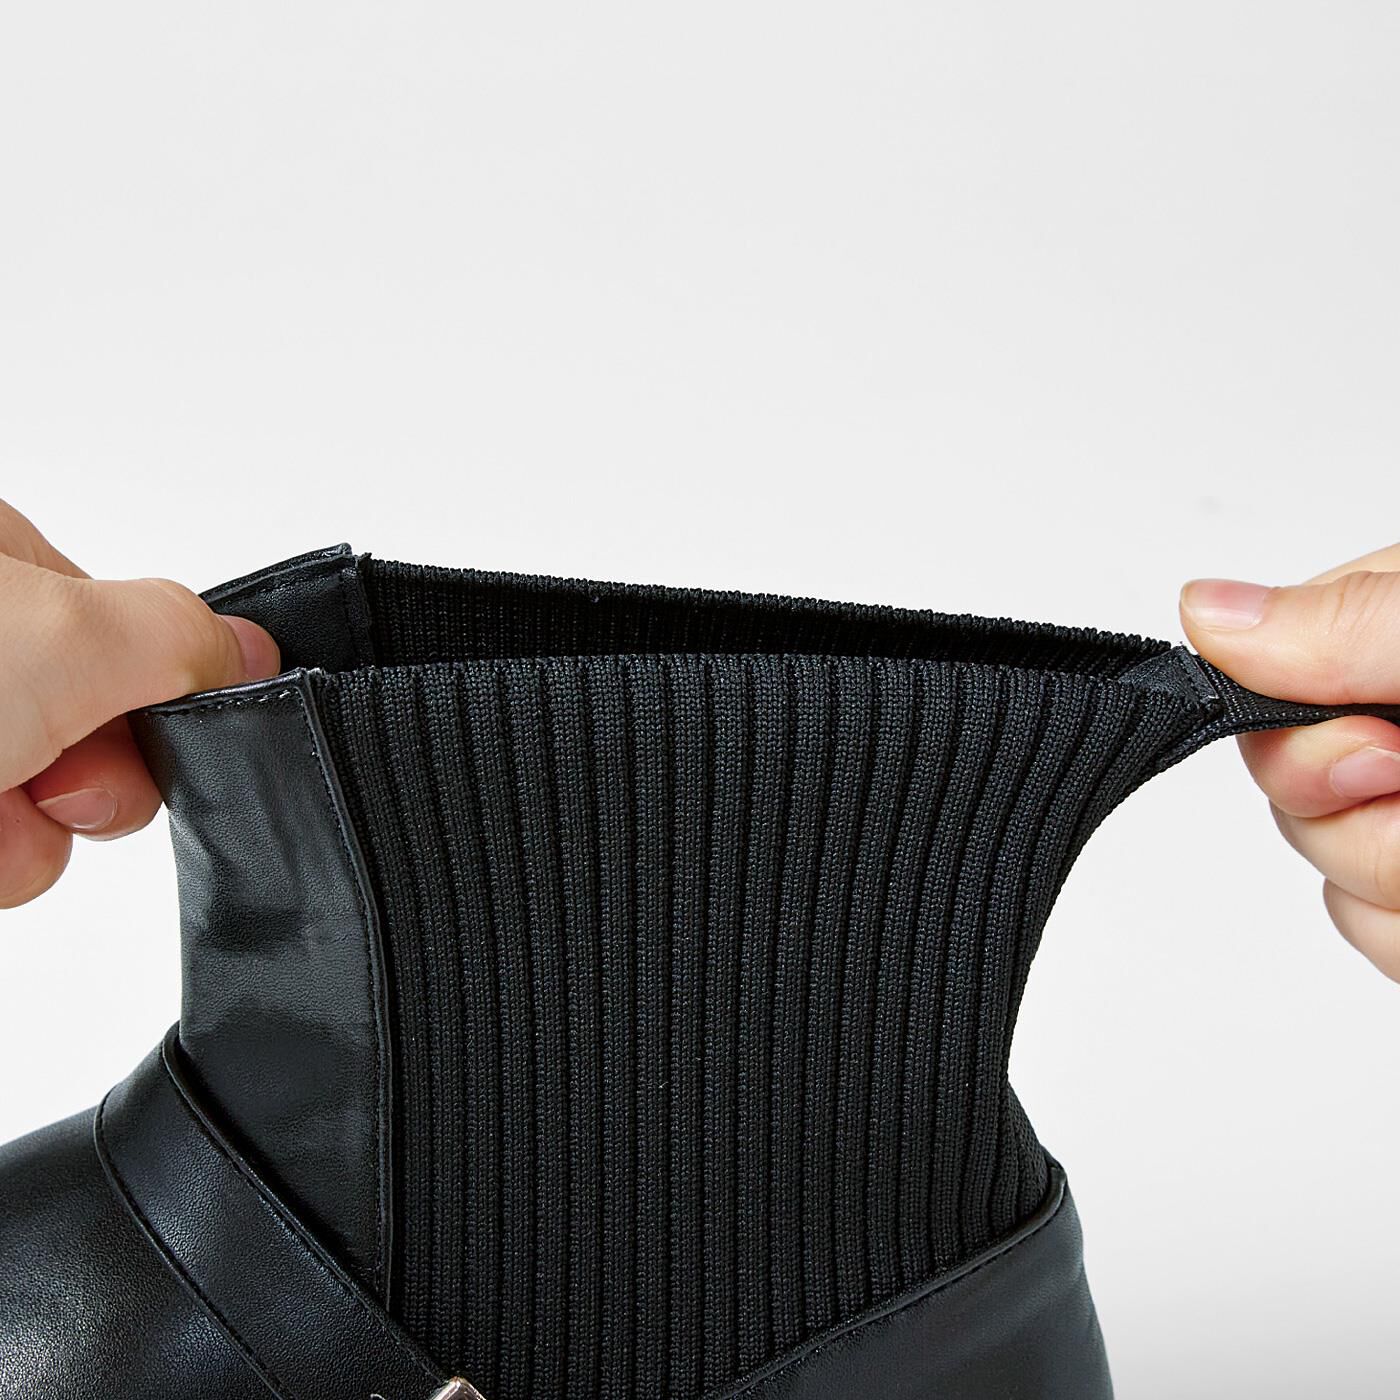 フェリシモの雑貨 Kraso|UP.de　ベルトが上品見え　ニット遣いで着脱らく　防水仕様ブーツ〈ブラック〉|伸縮するニット素材で脱ぎ履きらくちん。